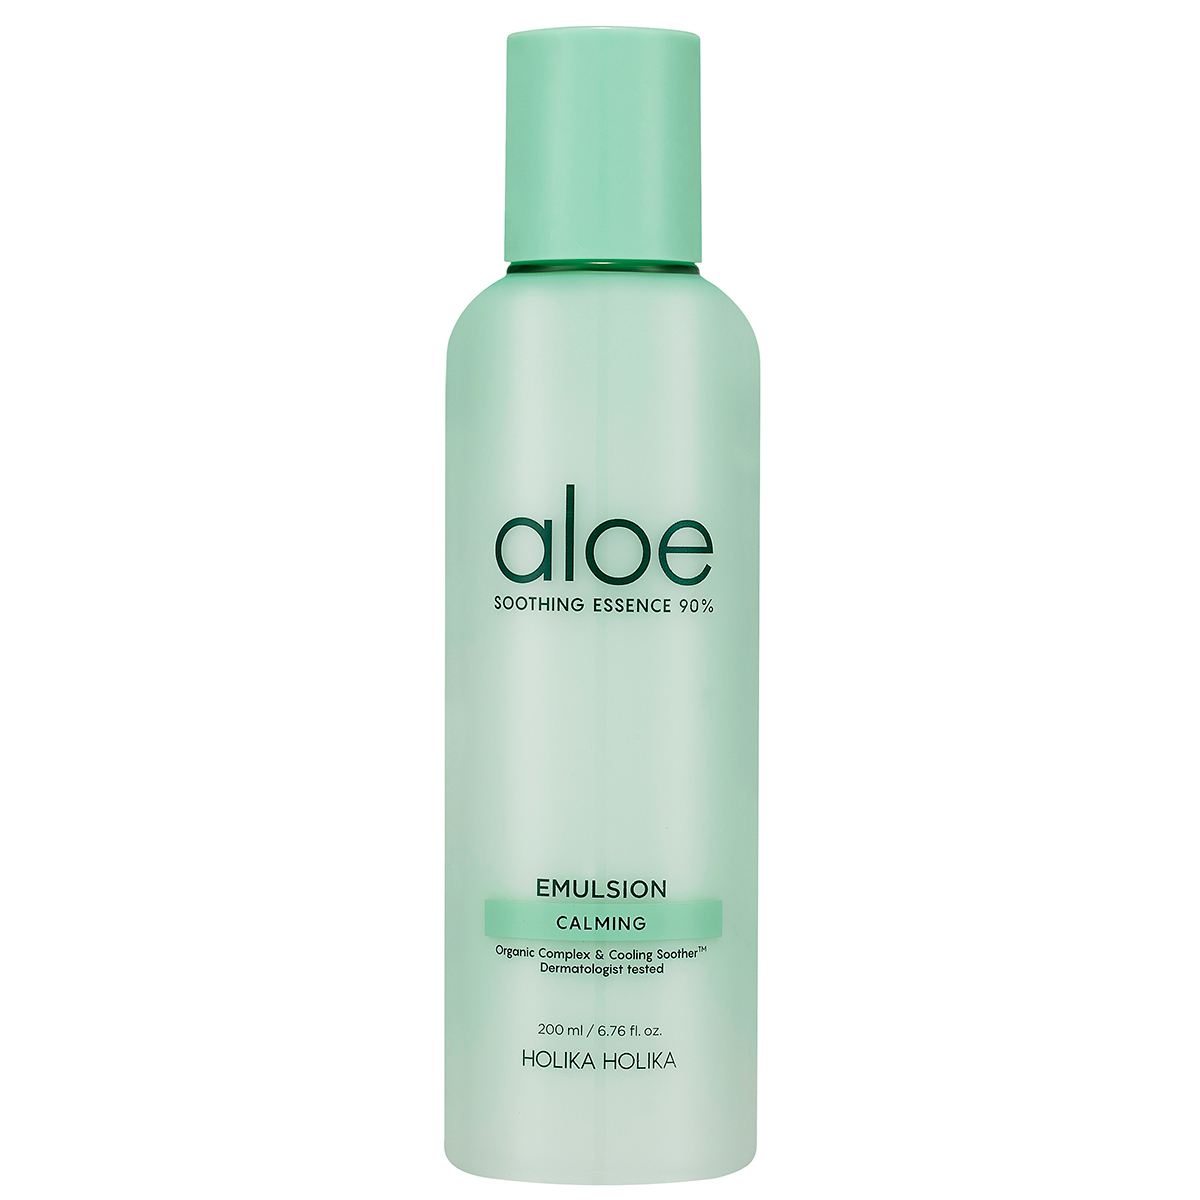 Aloe Soothing Essence 90% Emulsion, 200 ml Holika Holika K-Beauty